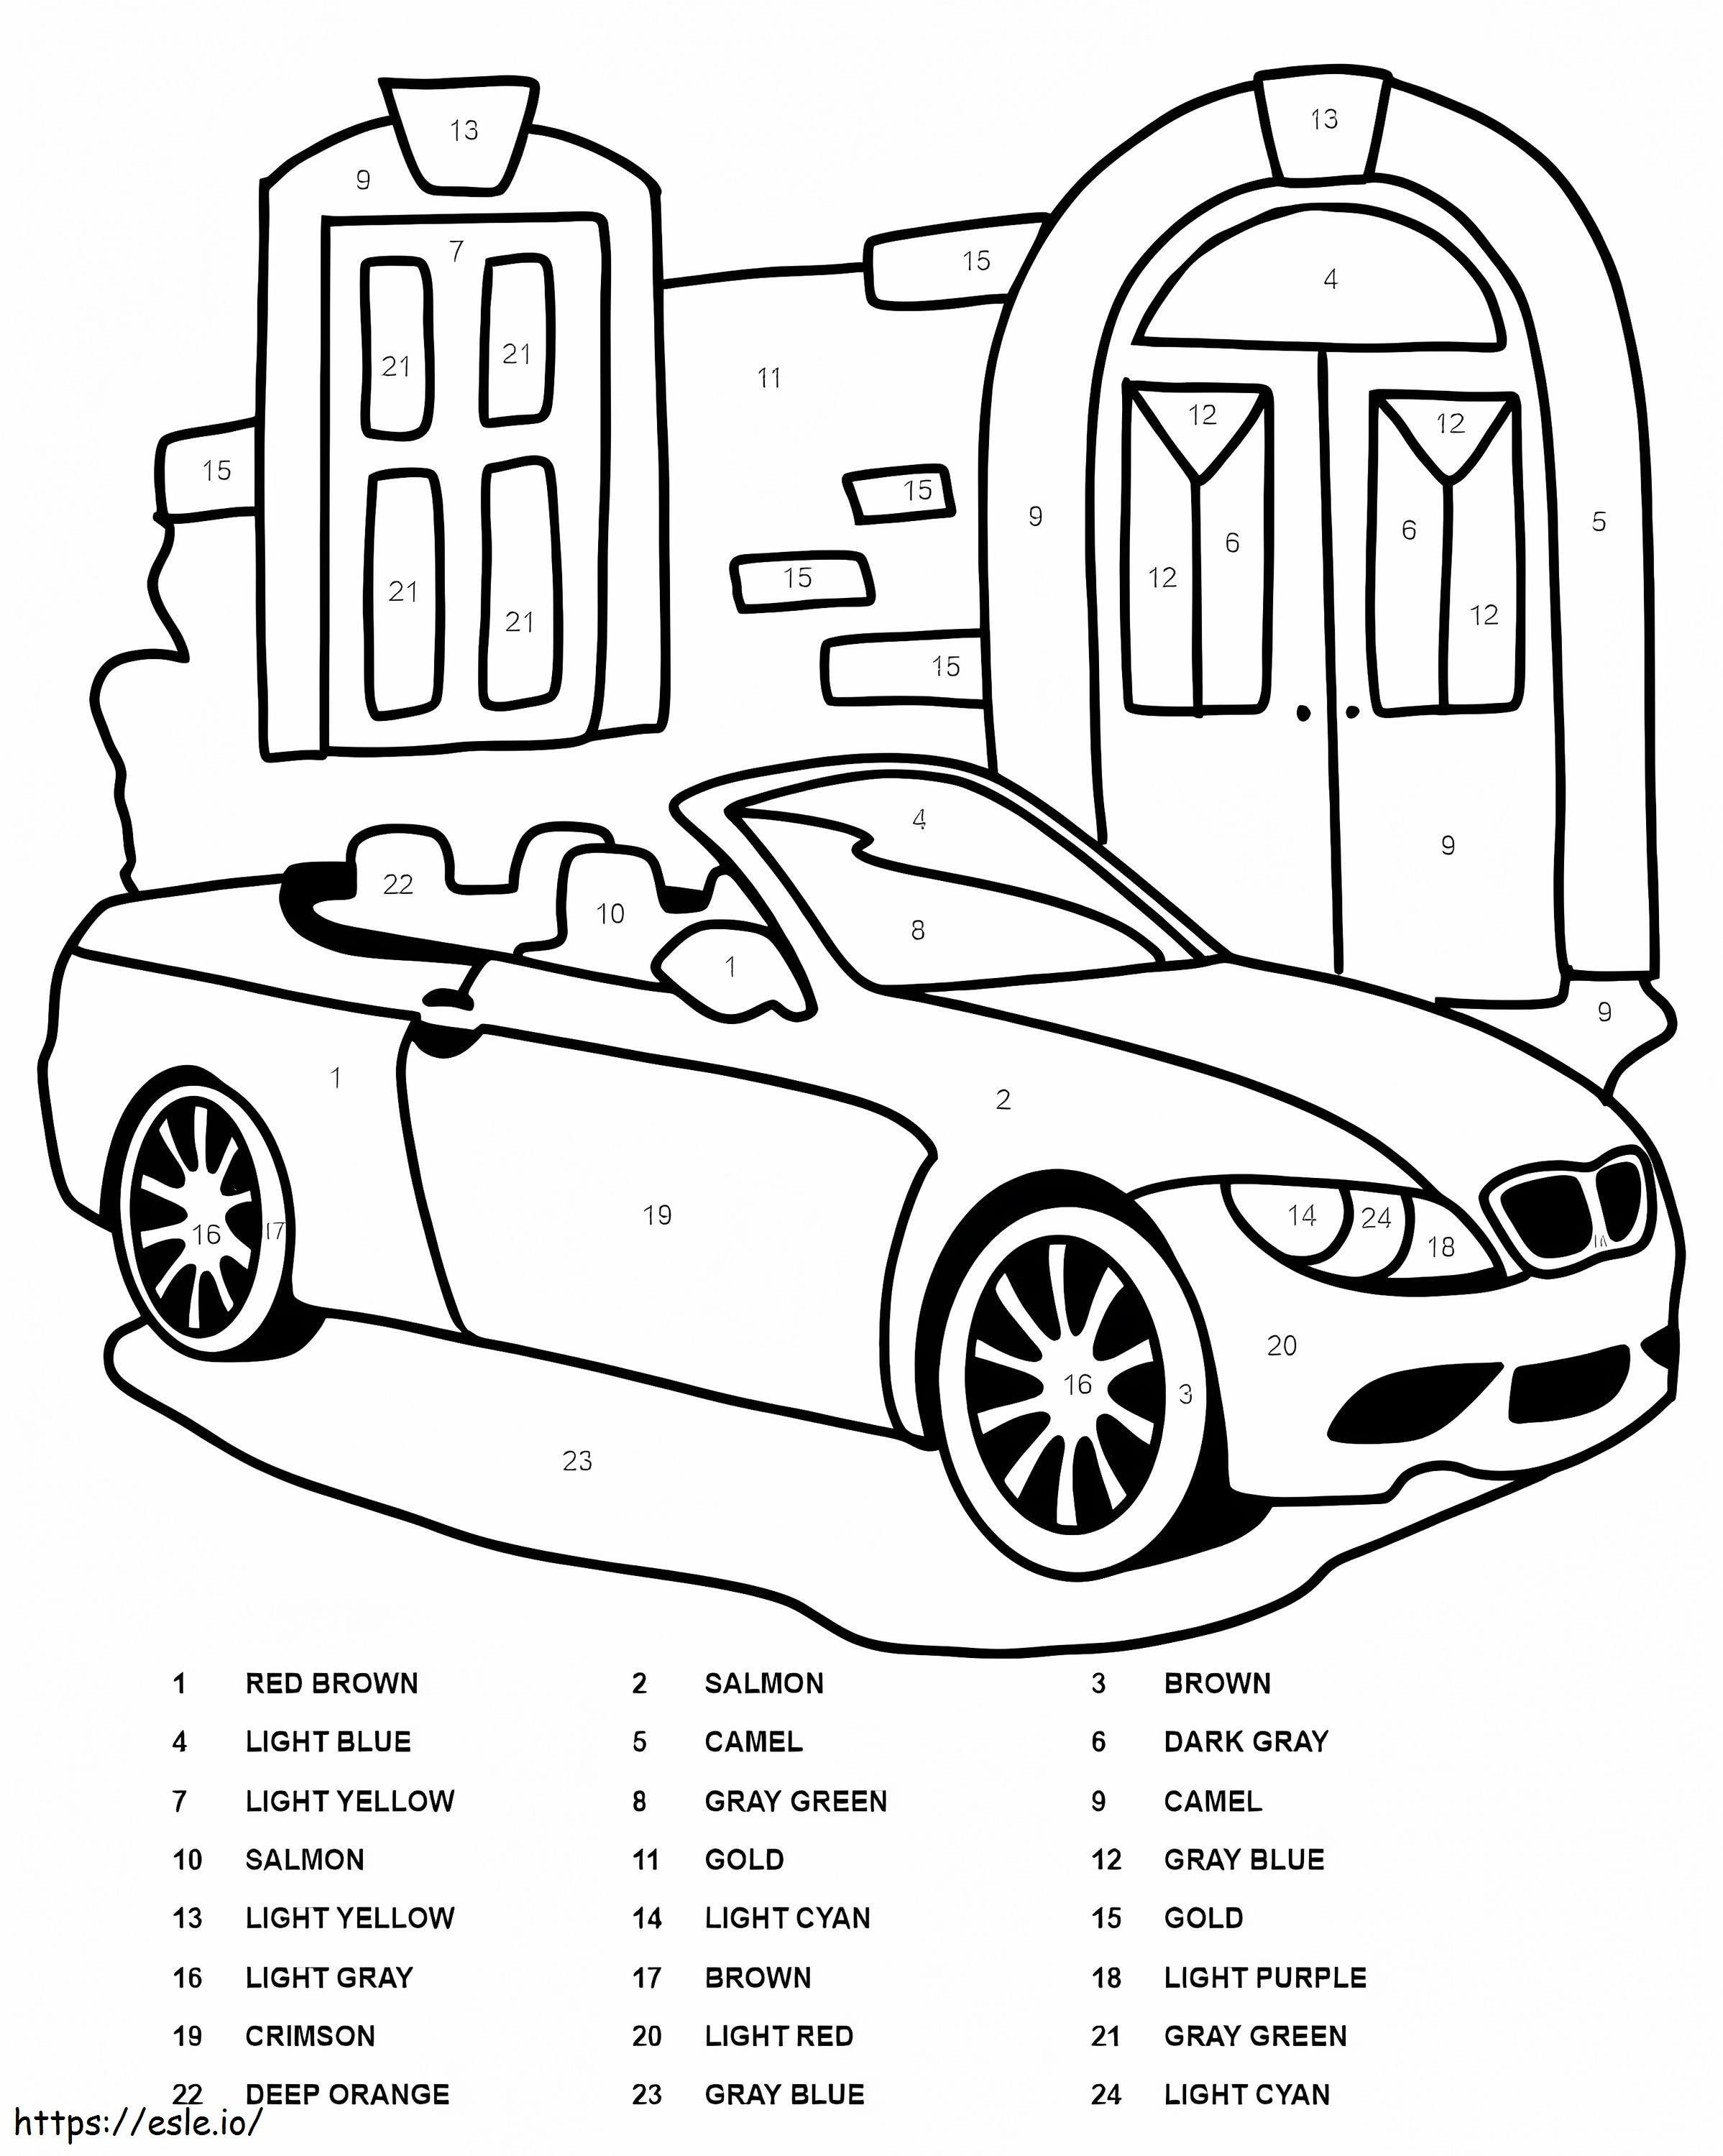 Culoare mașină BMW după număr de colorat